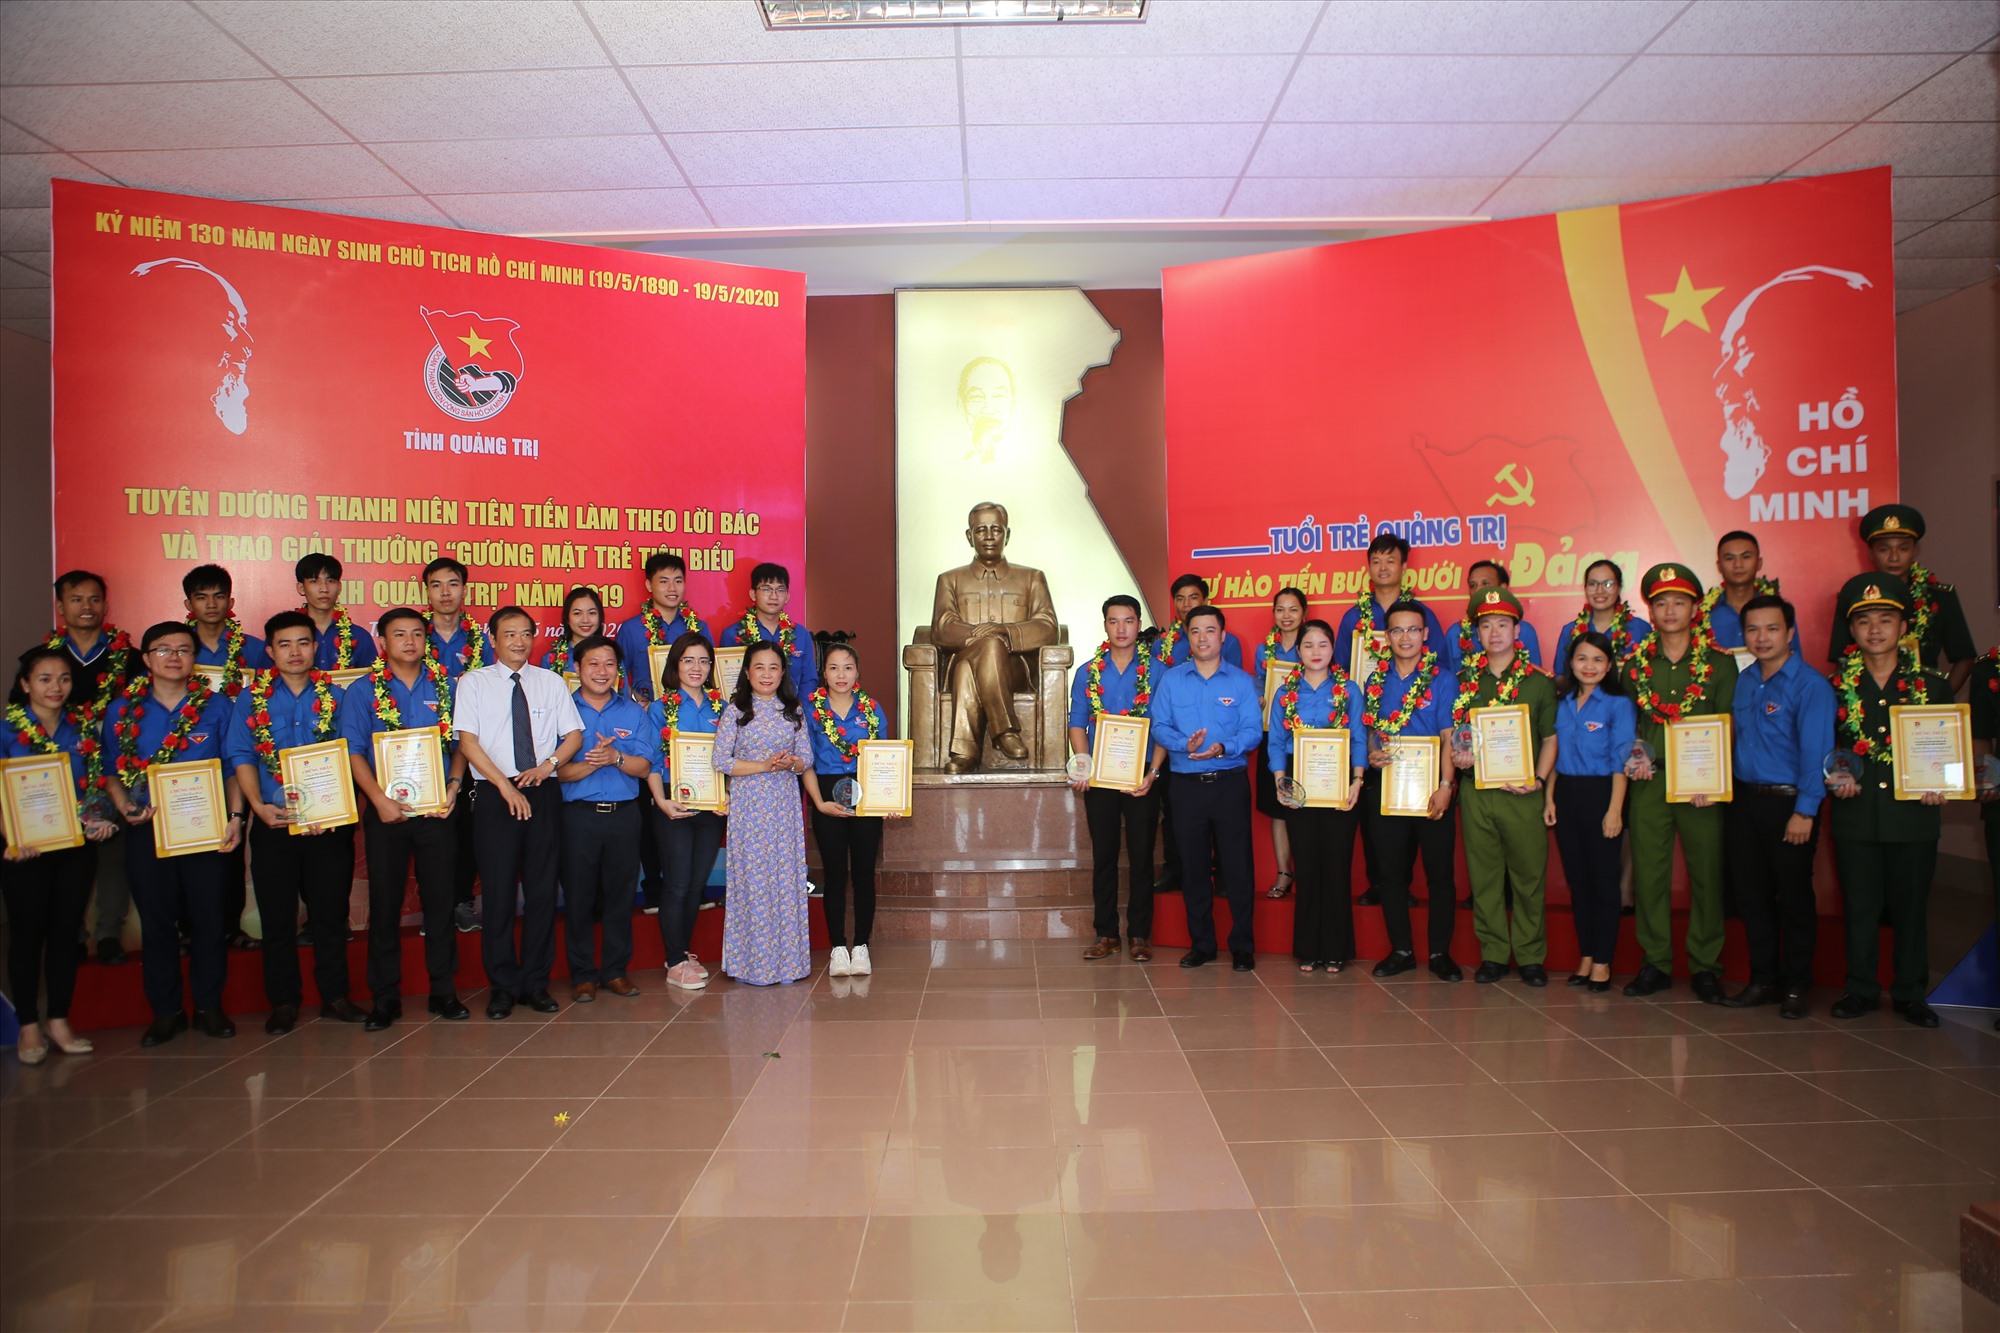 Các đại biểu tham dự chương trình tuyên dương Thanh niên tiên tiến làm theo lời Bác và trao giải thưởng “Gương mặt trẻ tiêu biểu tỉnh Quảng Trị” năm 2019